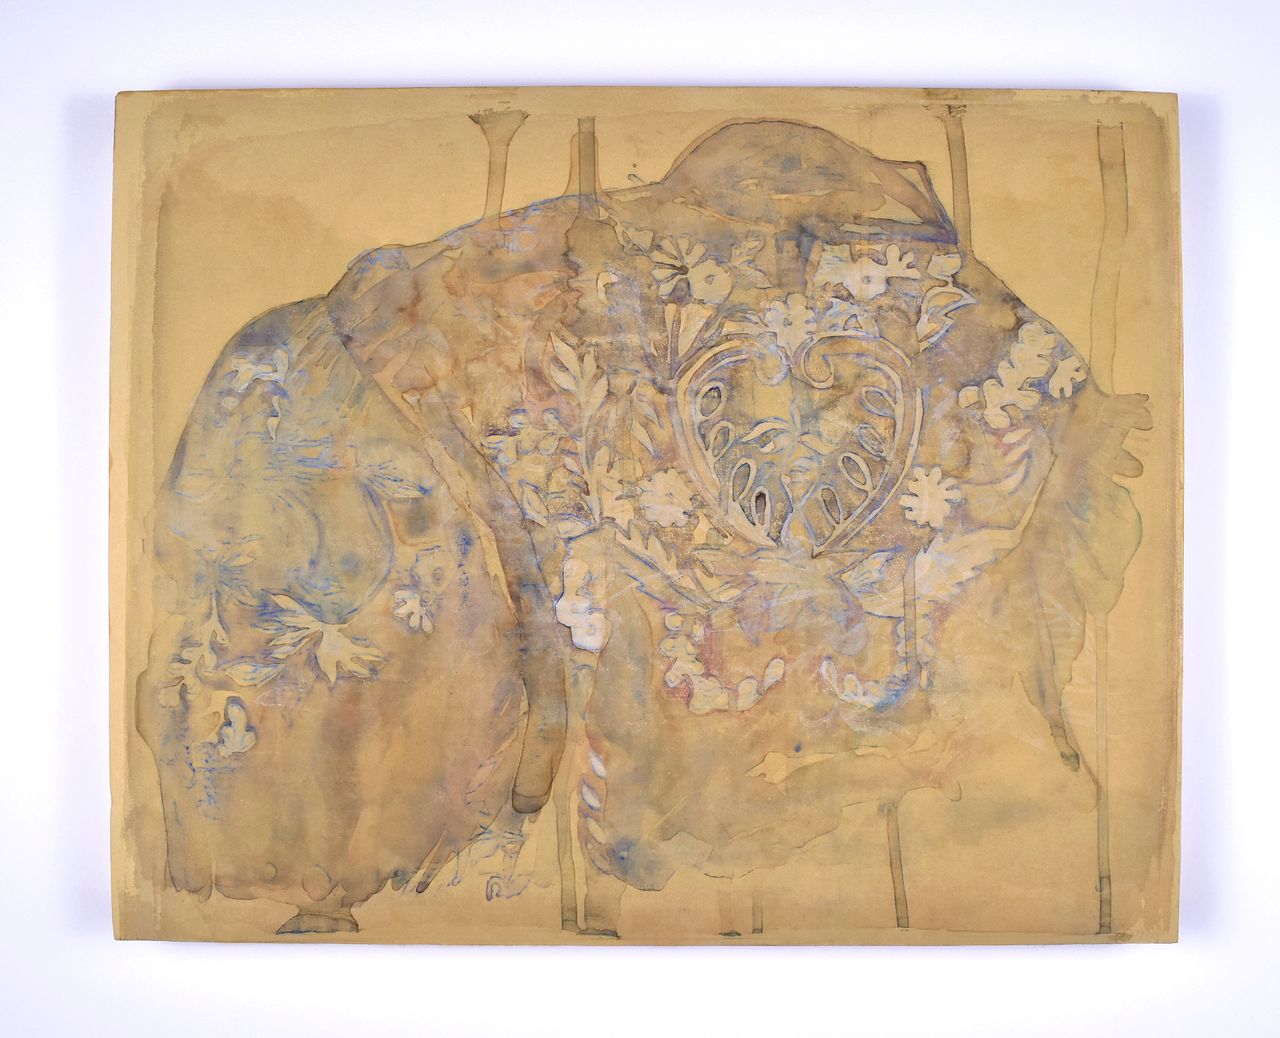 Rea Lynn de Guzman, "Ghost," 2015, monoprint on paper mounted on panel.